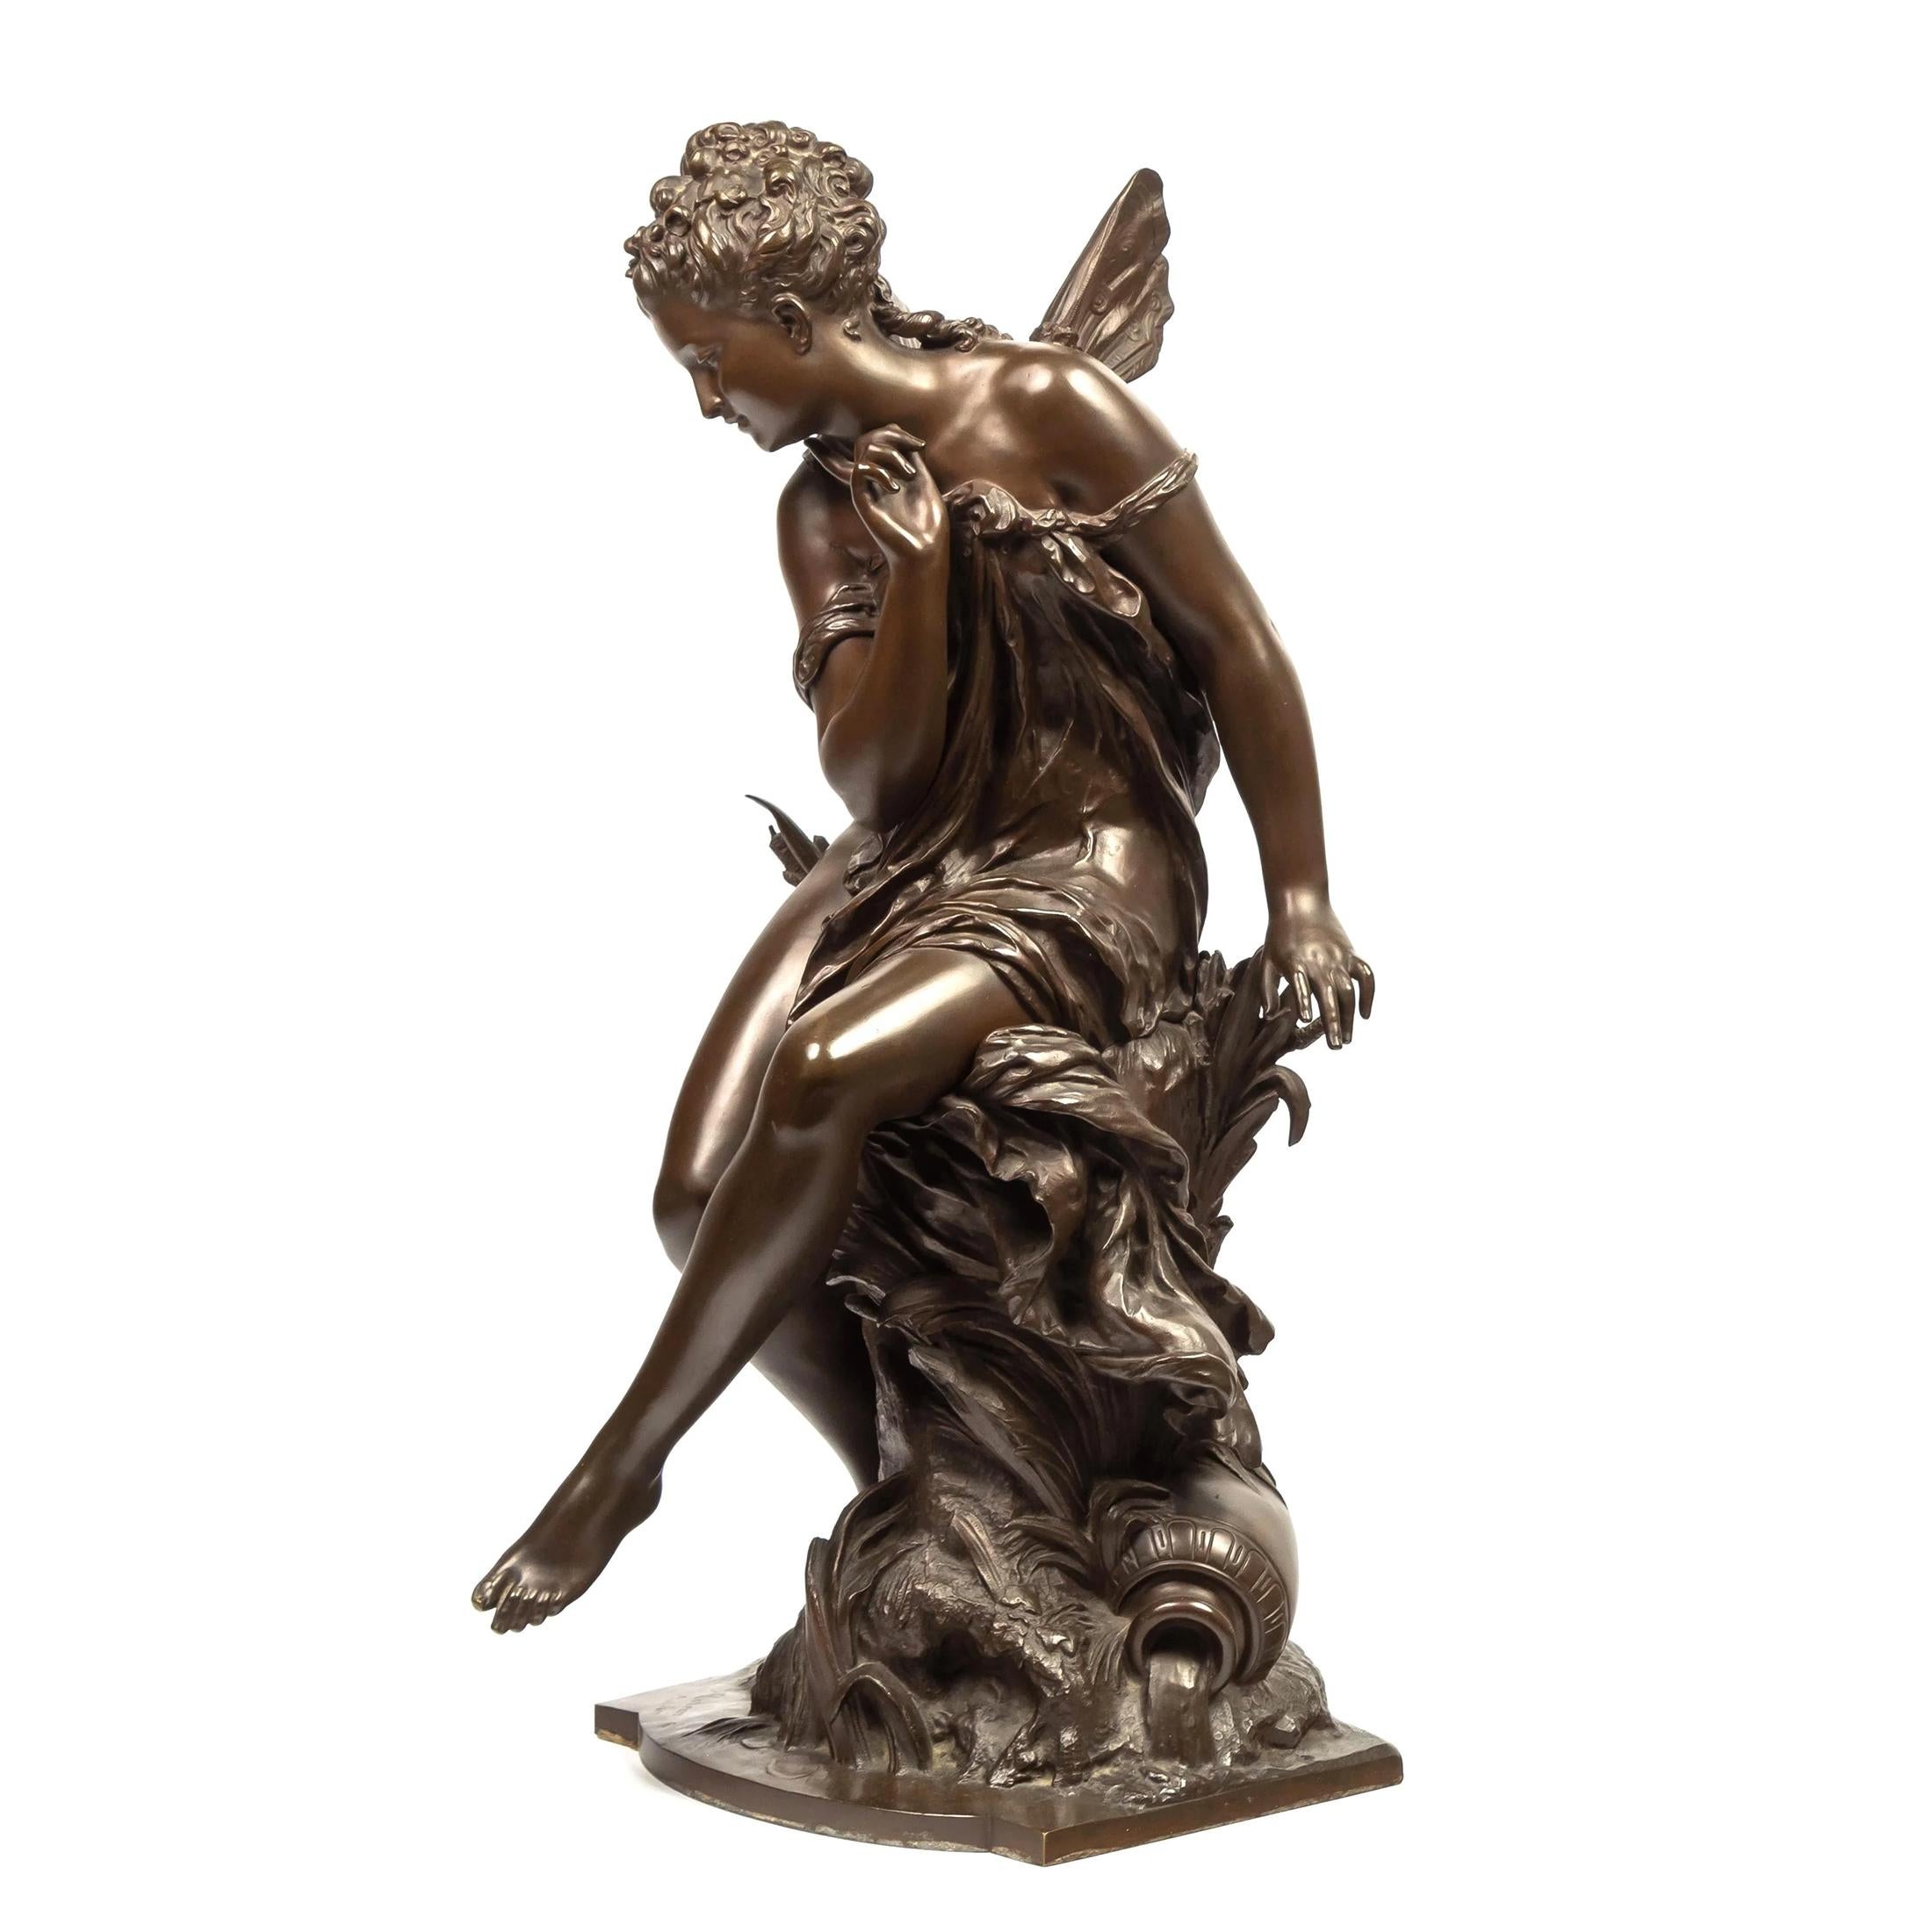 MATHURIN MOREAU
Französisch, (1822-1912)

La Libellule
unterzeichnet "Moreau Mathurin".  
27 1/2 in. 11 1/2 in. x 15 in.


Anmerkungen: Eine hochwertige allegorische Bronzeskulptur im Jugendstil, die eine sitzende Fee mit kleinen Flügeln darstellt.